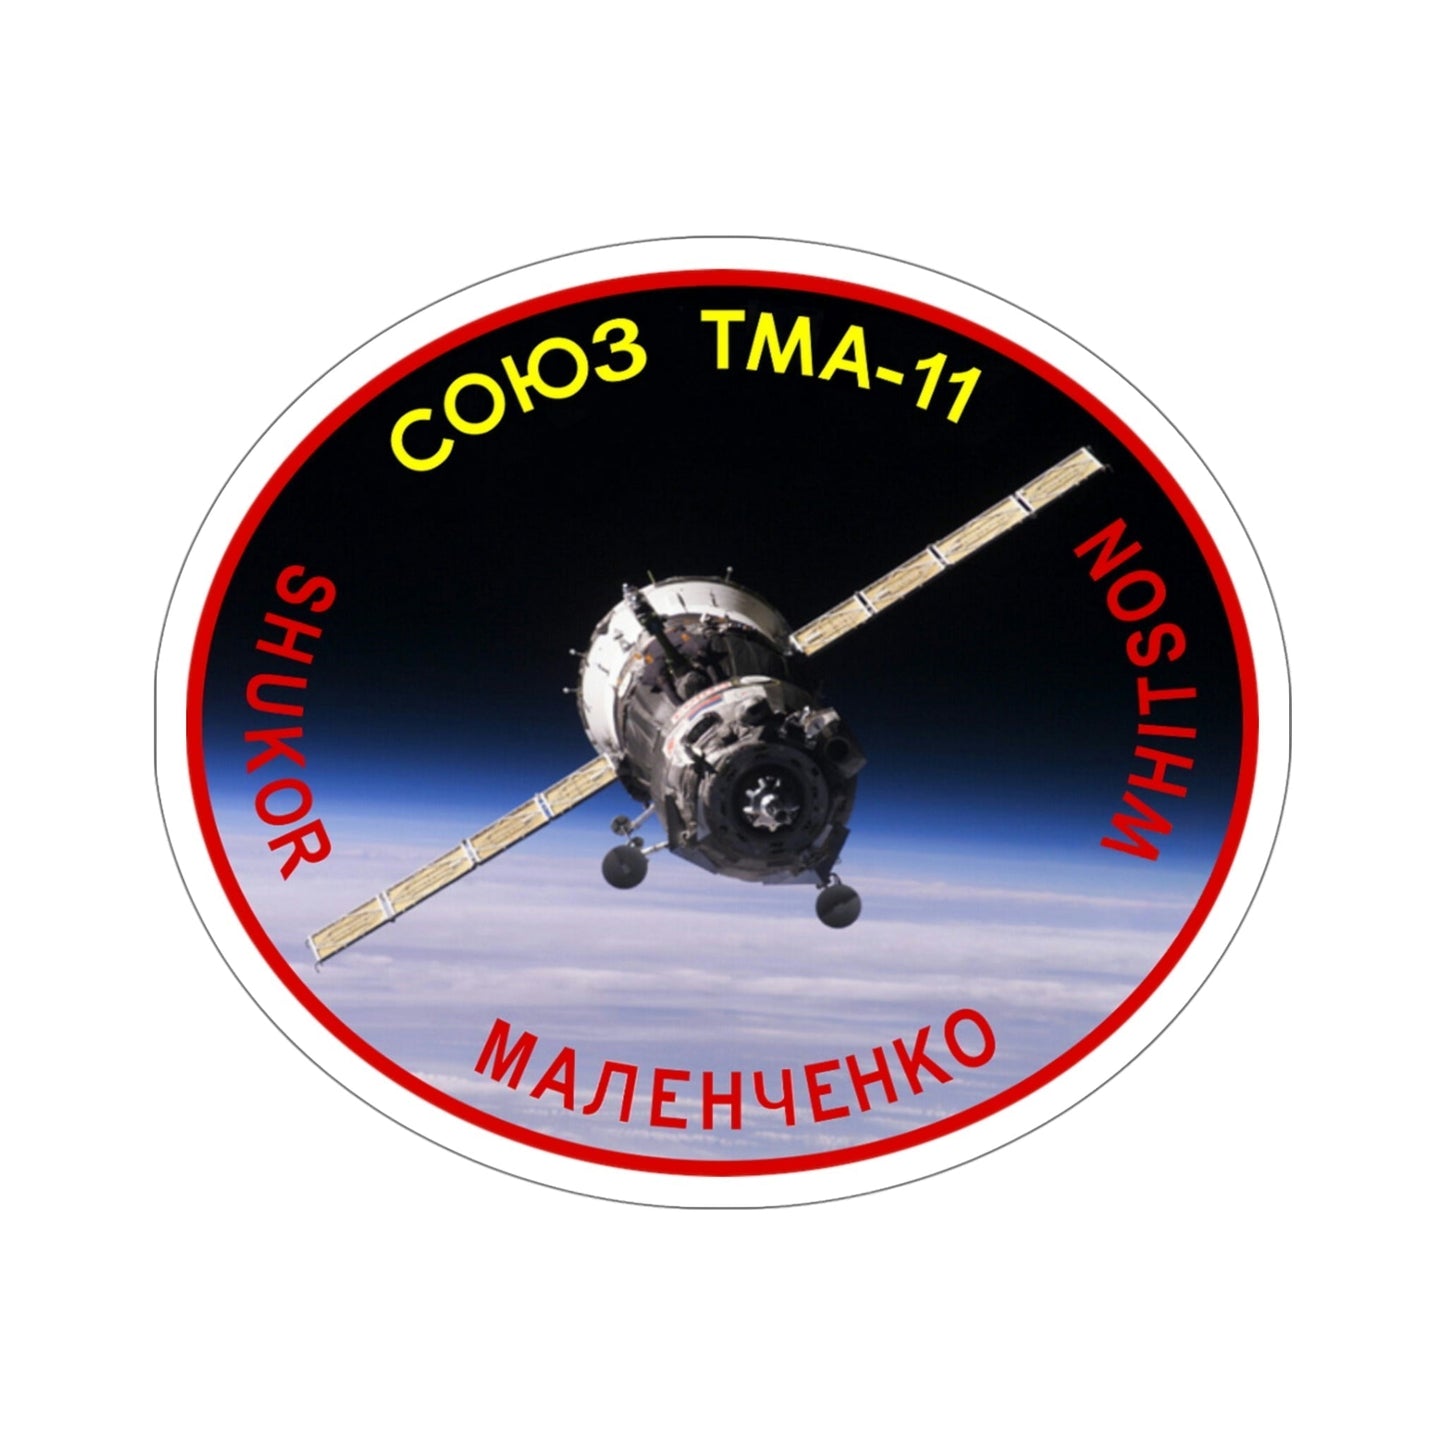 Soyuz TMA-11 (Soviet Space Program) STICKER Vinyl Die-Cut Decal-5 Inch-The Sticker Space